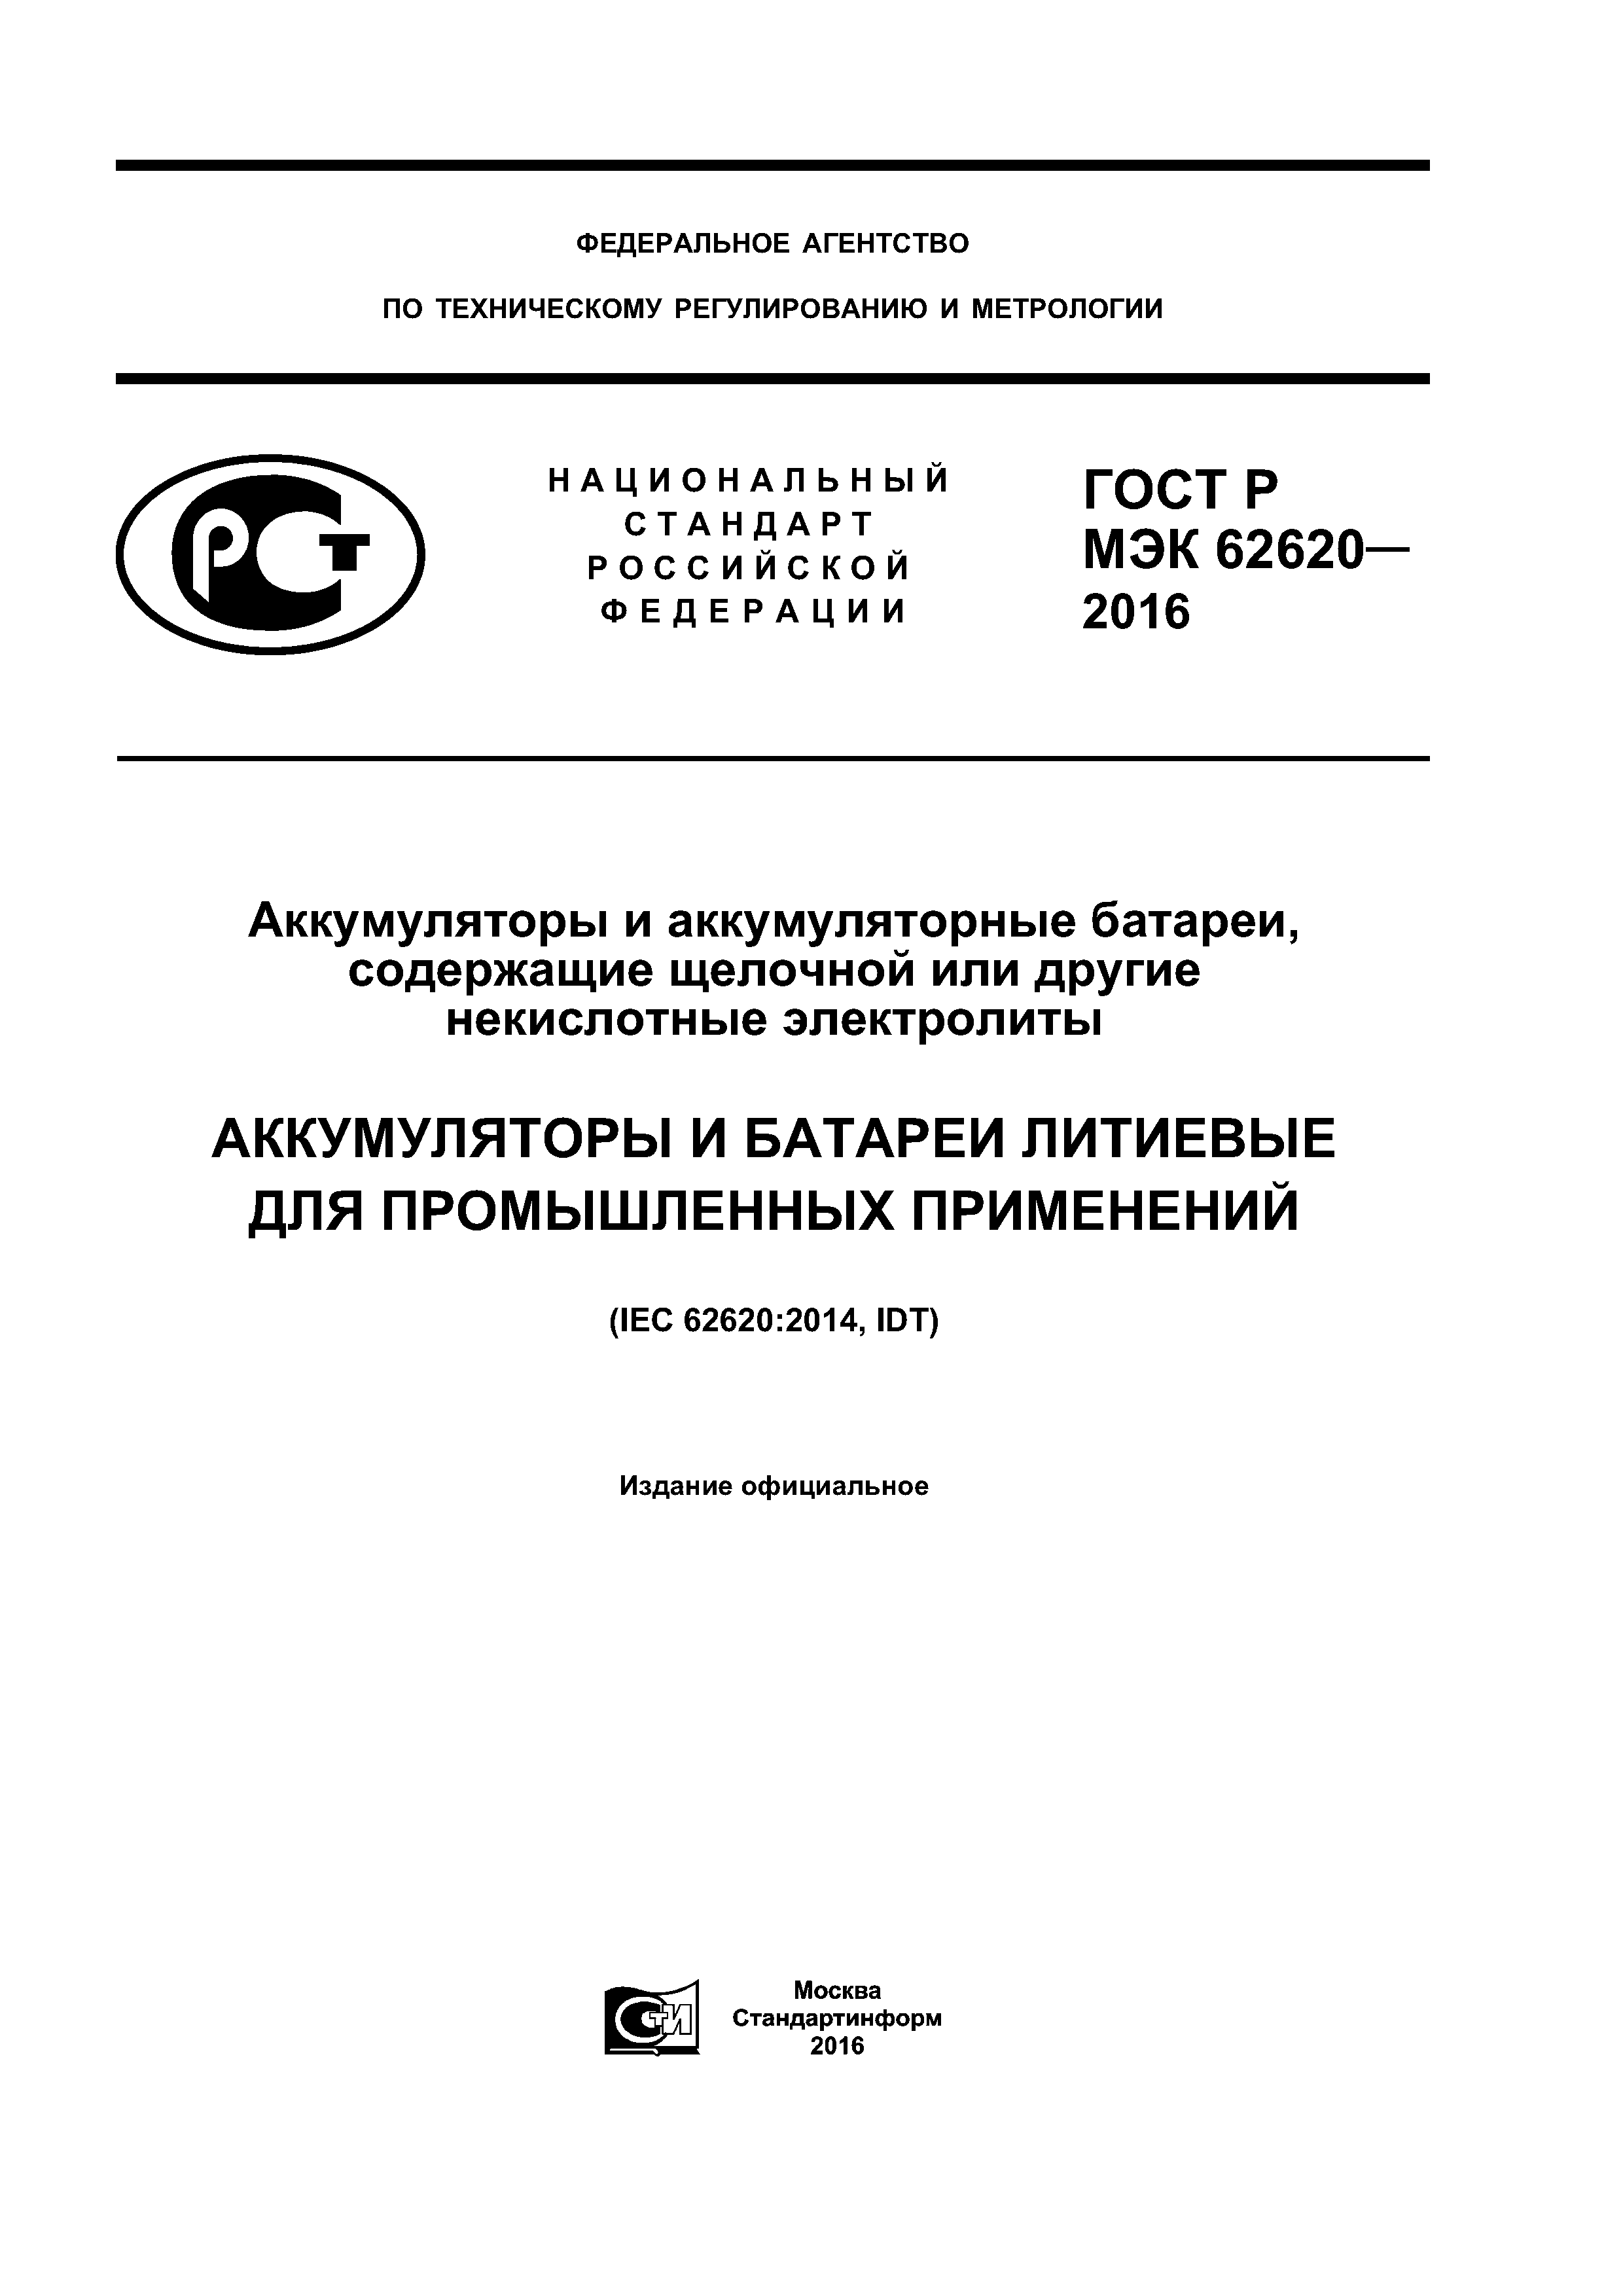 ГОСТ Р МЭК 62620-2016